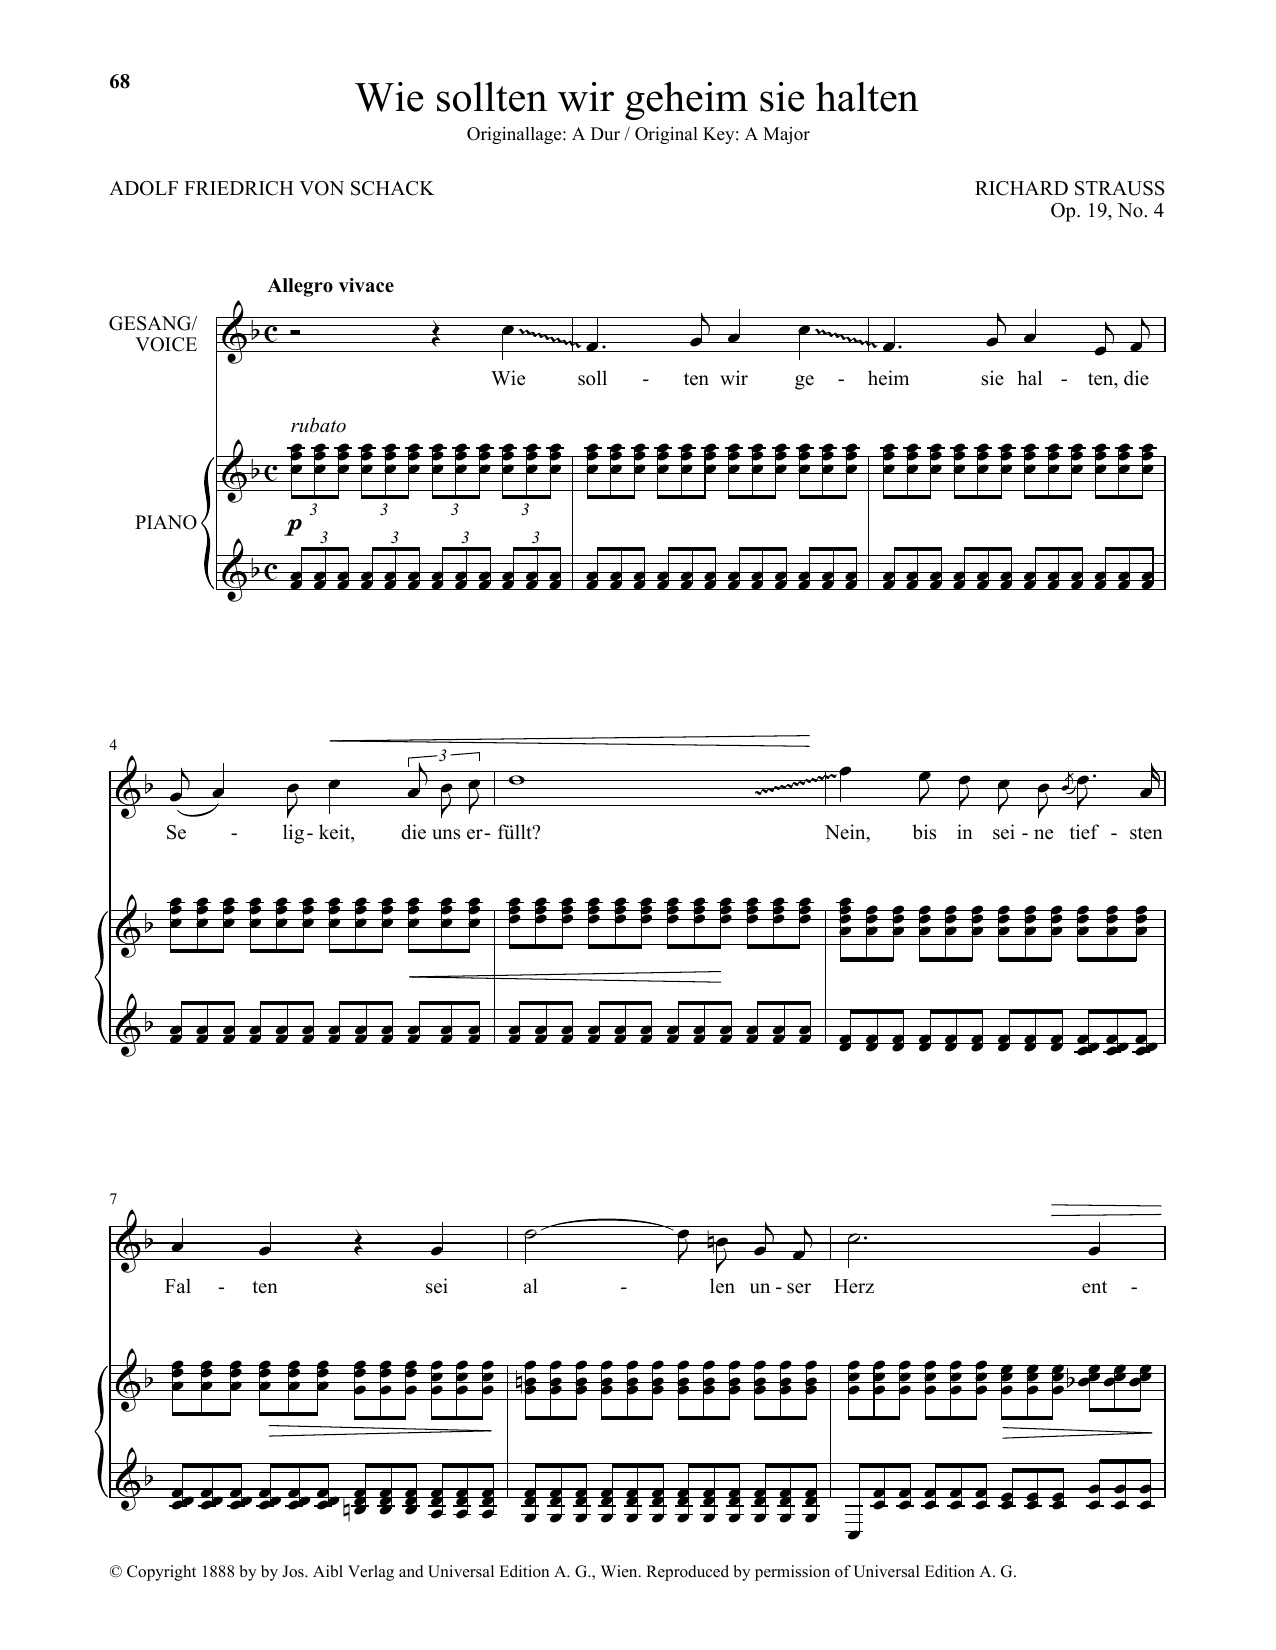 Download Richard Strauss Wie Sollten Wir Geheim Sie Halten (Low Voice) Sheet Music and learn how to play Piano & Vocal PDF digital score in minutes